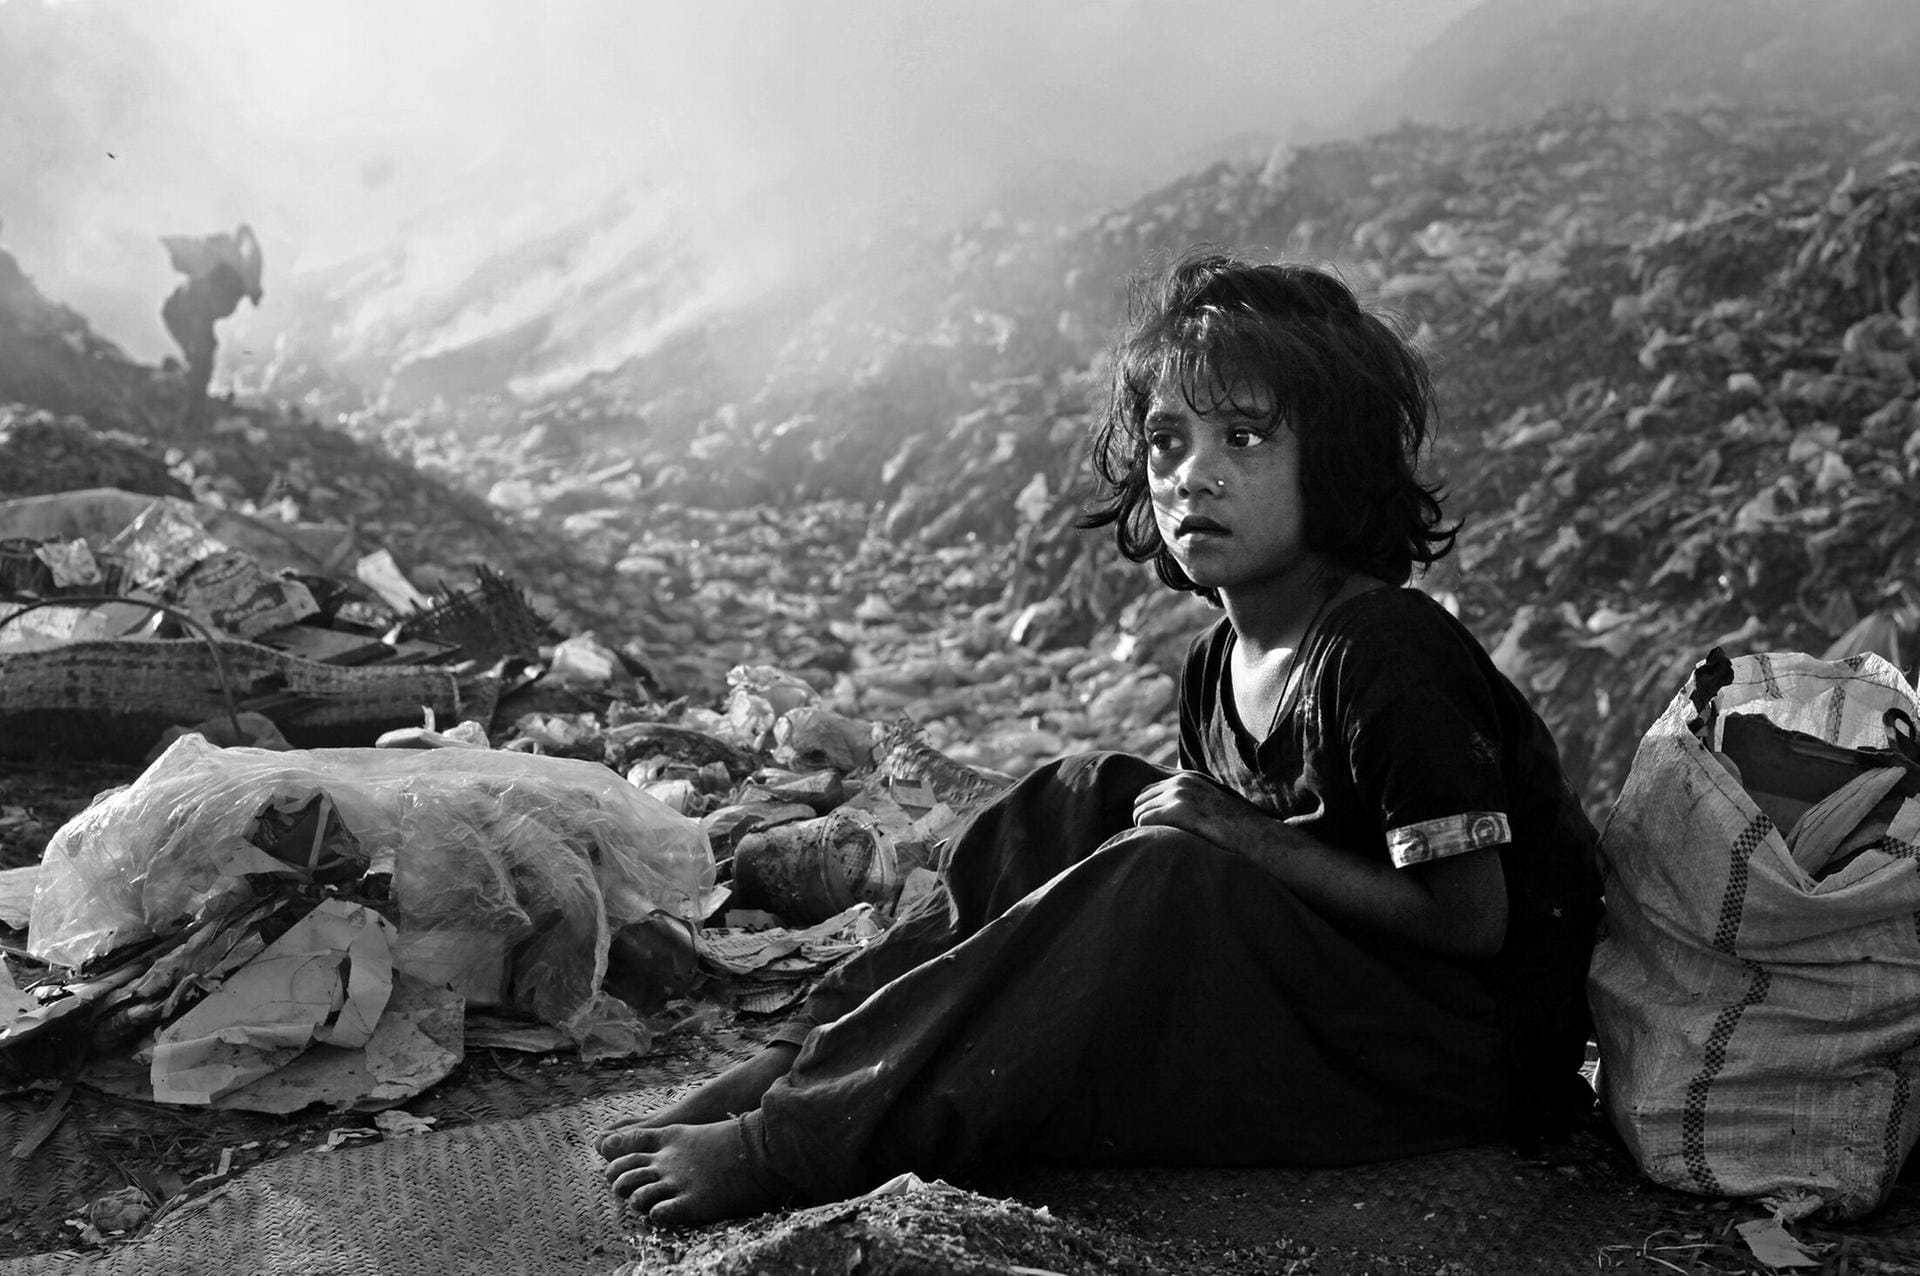 Bangladesch: Kinder wühlen auf einer Müllhalde nach verwertbaren Resten. Der Fotograf Mohammad Khan sieht hunderttausende Kinder in seinem Land mit einer Situation konfrontiert, die nicht das Geringste mit den Versprechen der UNKinderrechtskonvention zu tun hat.